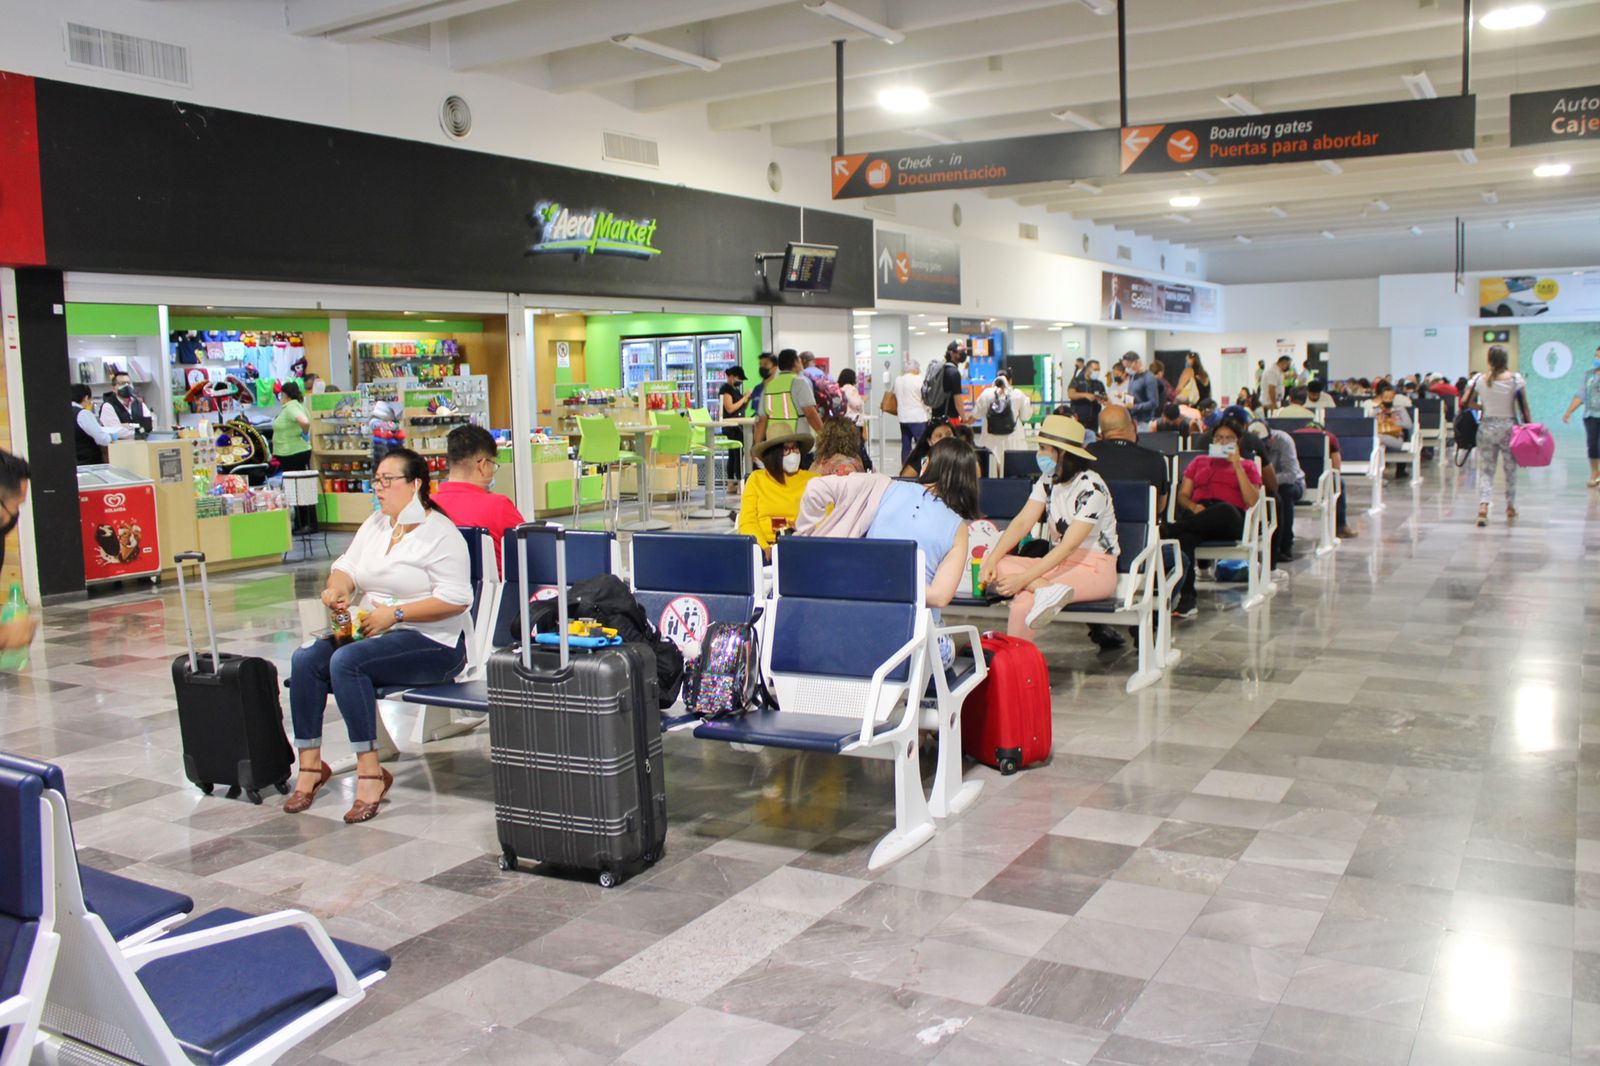 En el caso de La Paz, las conexiones aéreas incluirán vuelos desde la capital del estado a Mazatlán, operados por Viva Aerobús, y hacia Chihuahua, operados por TAR, con salidas los jueves y sábados a partir del primero de abril.